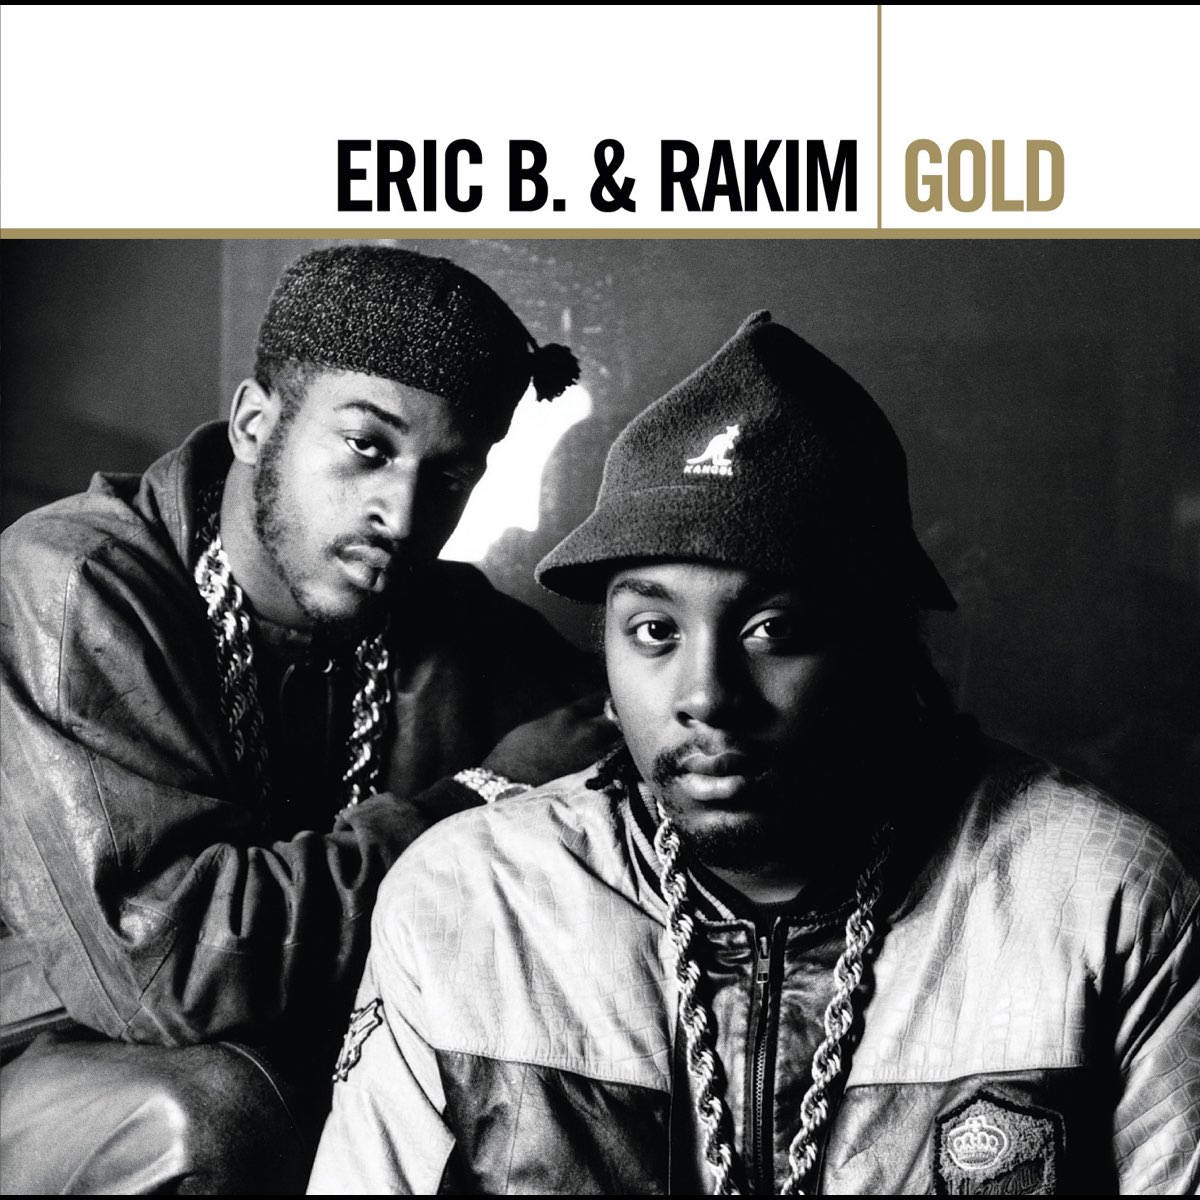 Eric B og Rakim Gold Greatest Hits Album Cover Wallpaper